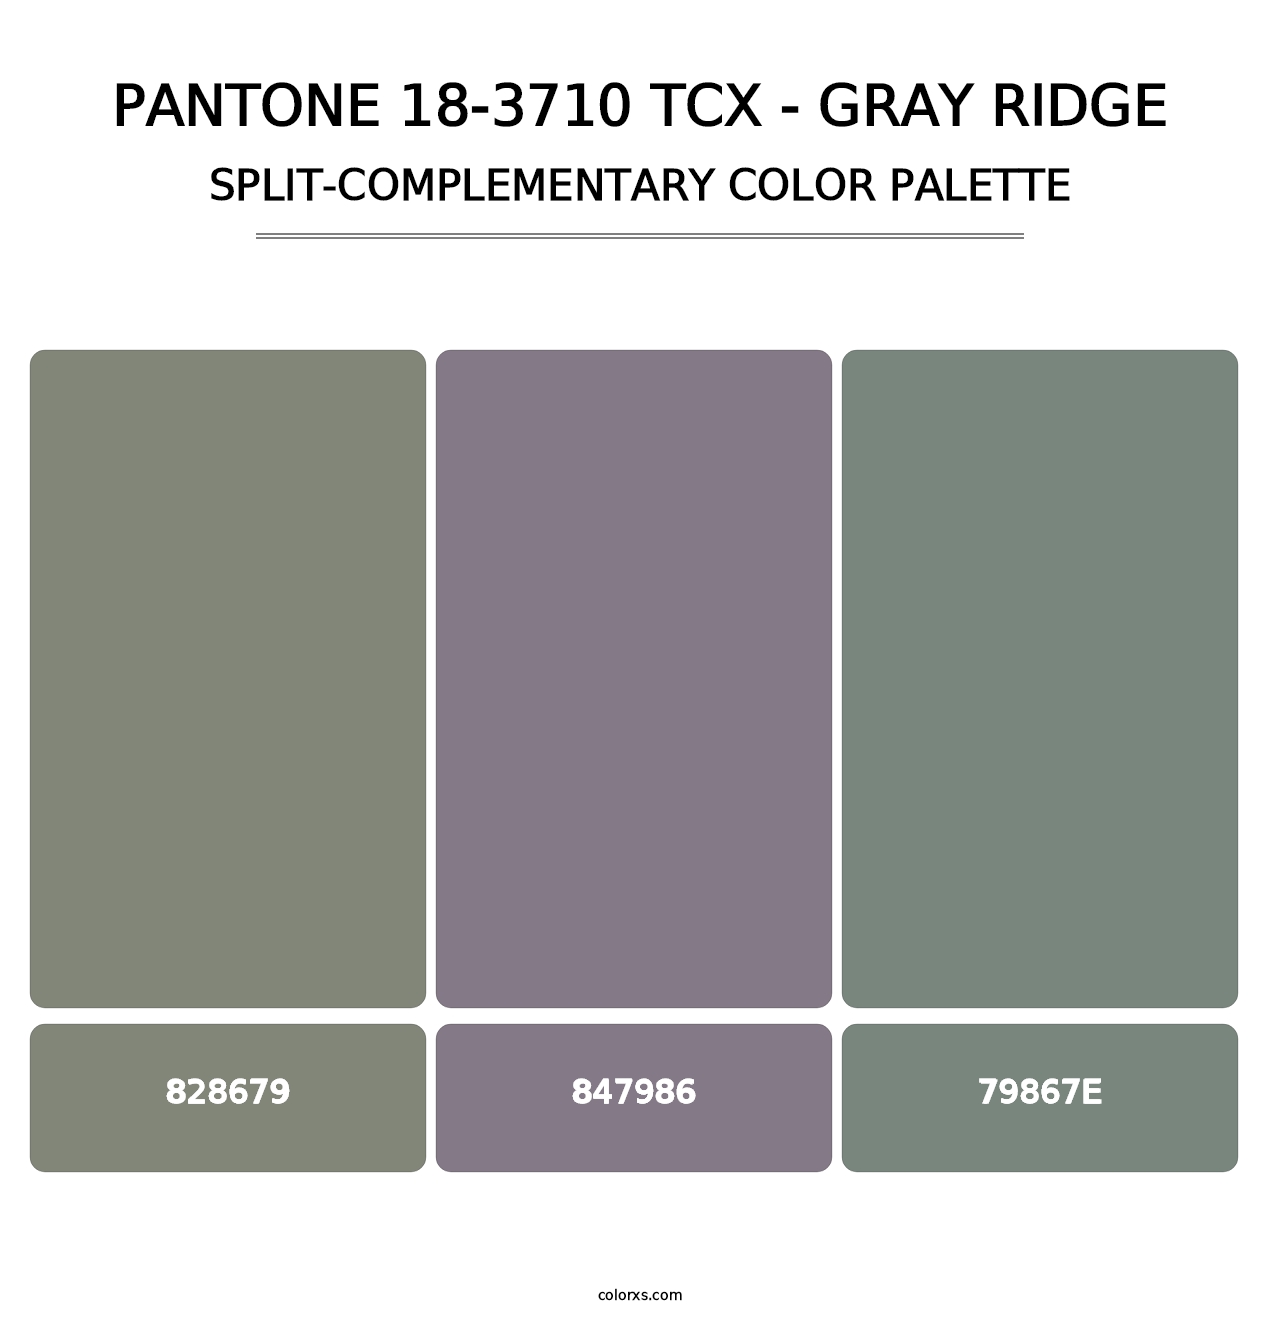 PANTONE 18-3710 TCX - Gray Ridge - Split-Complementary Color Palette